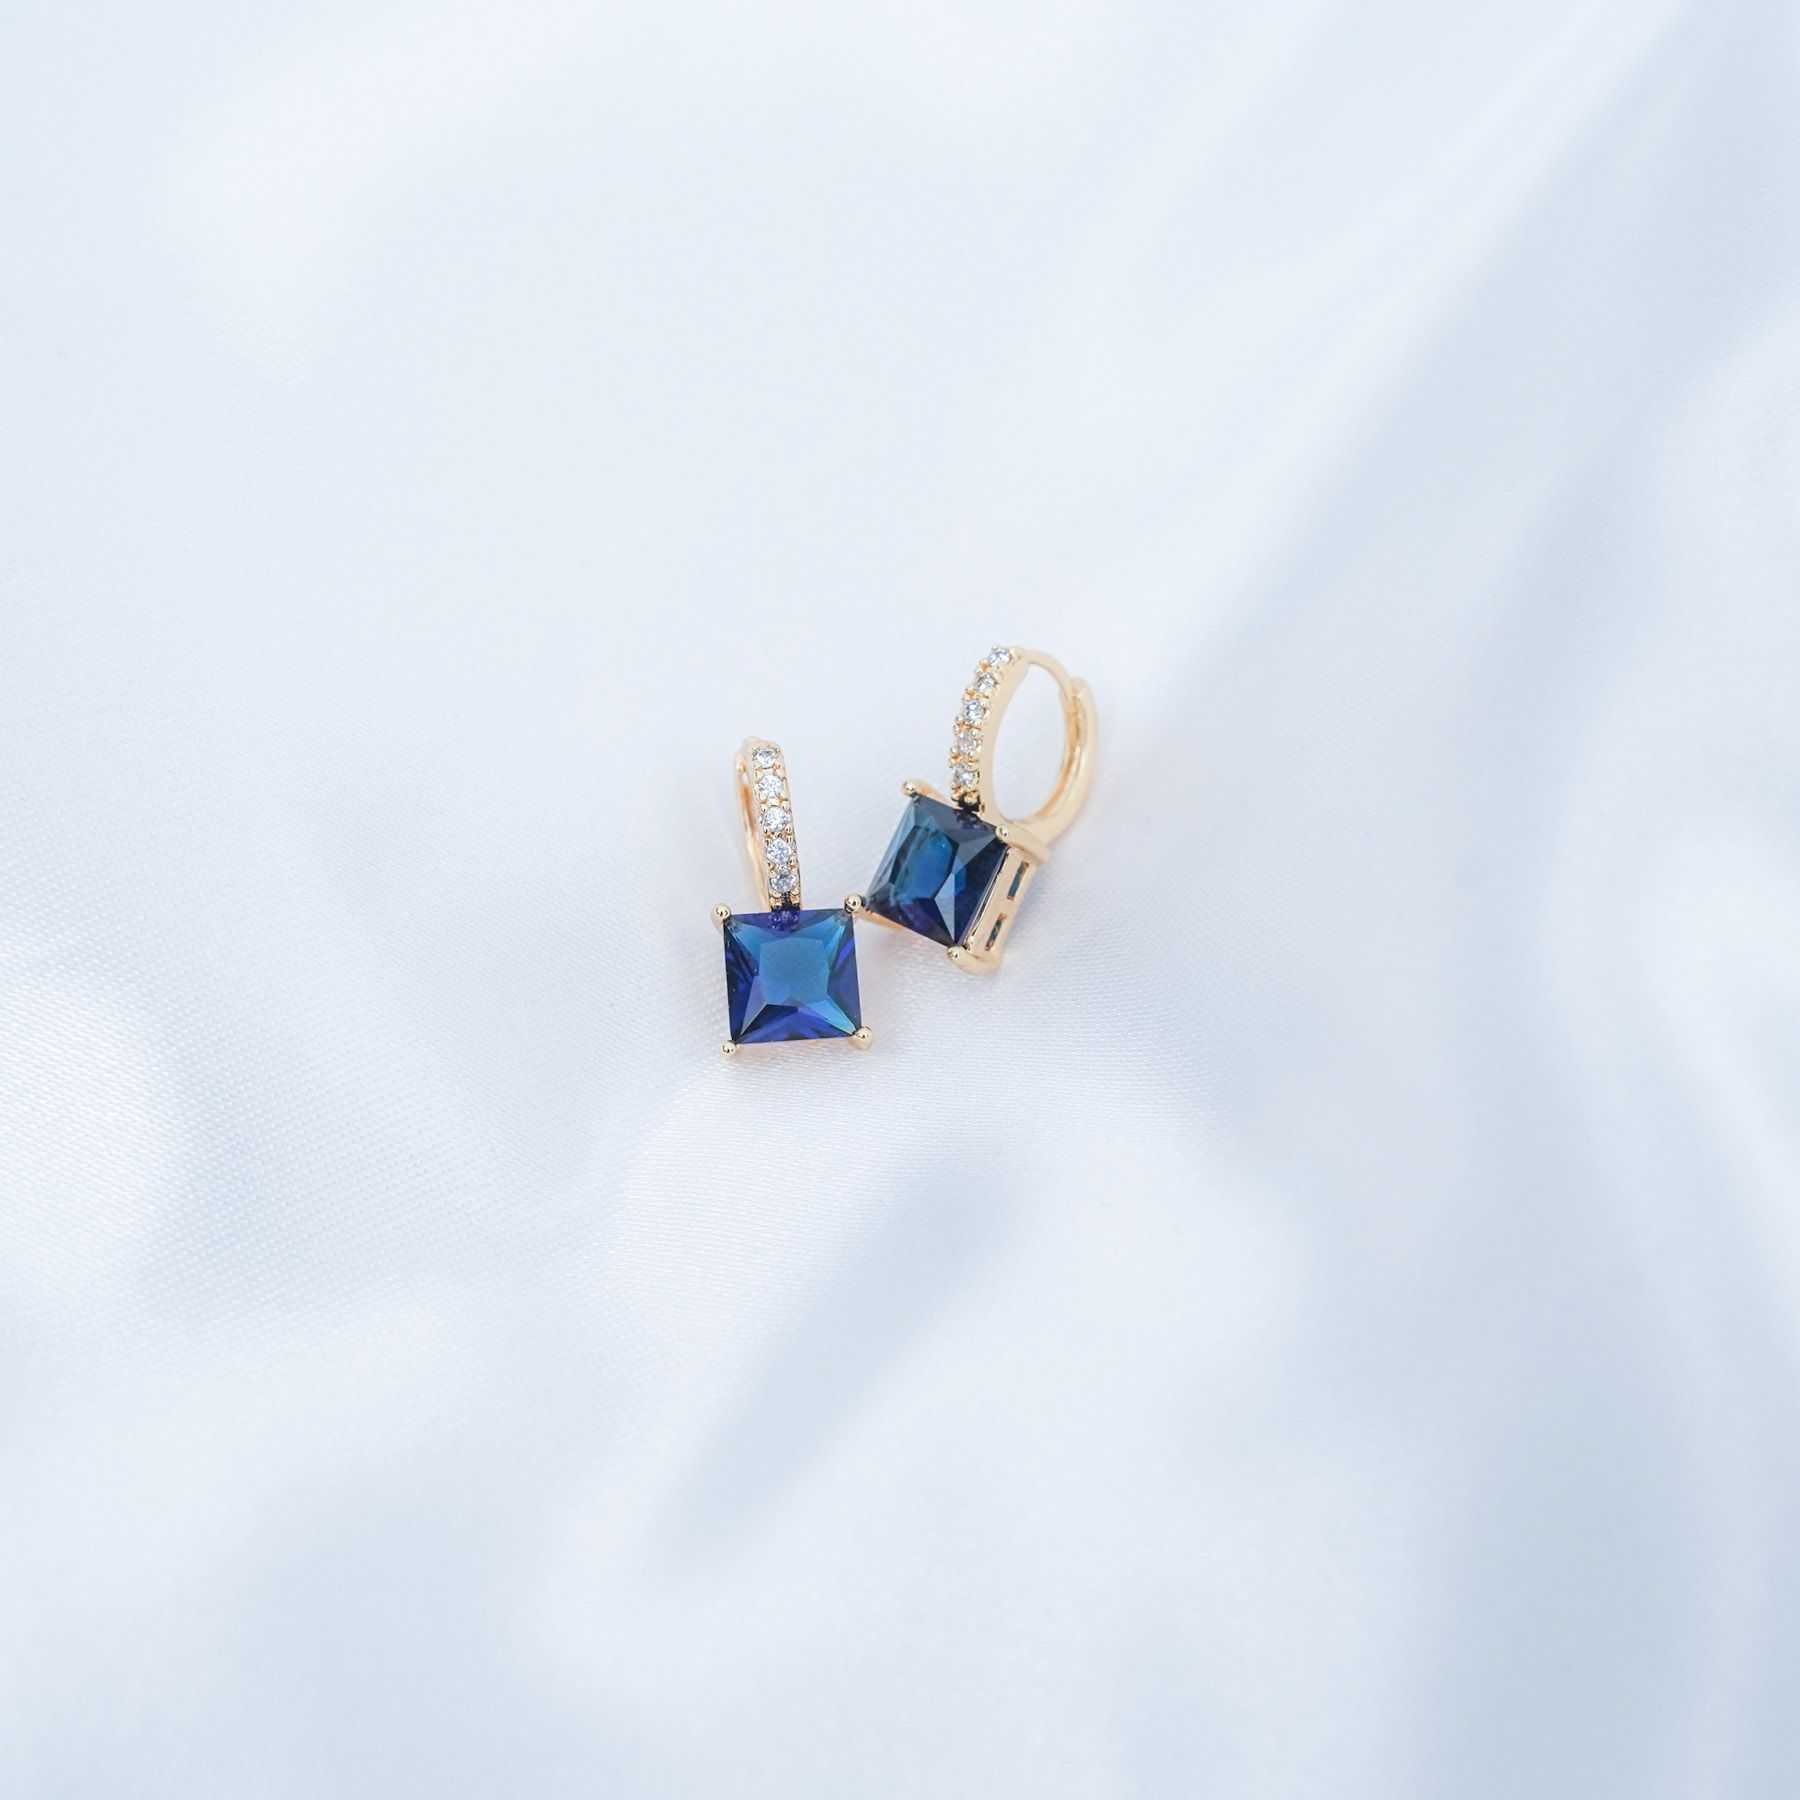 SCARLETT EARRINGS - GOLD & BLUE